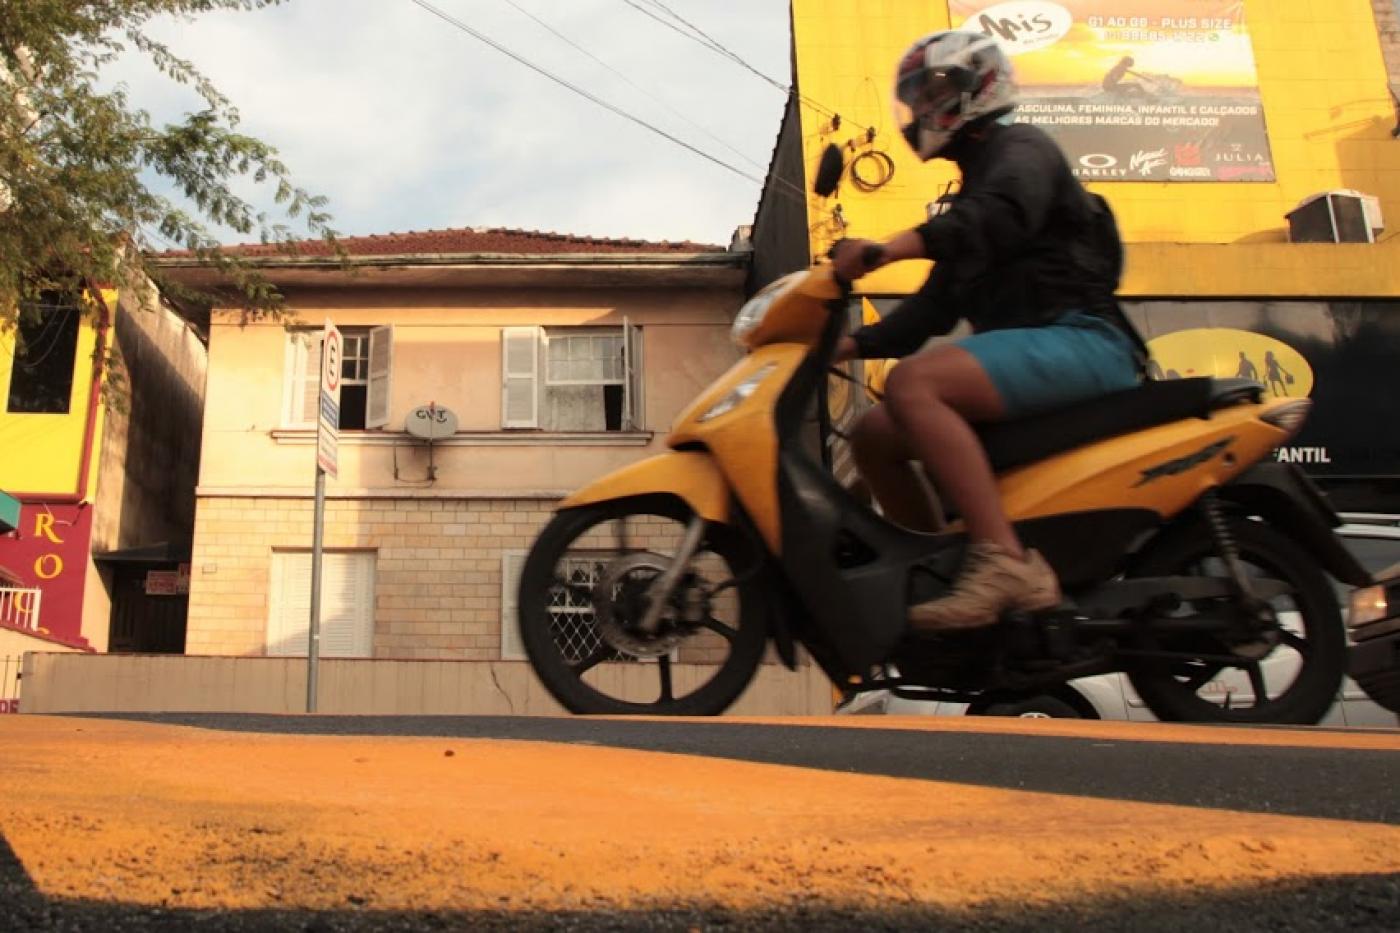 Homem de moto passa por cima de lombada - #paratodosverem